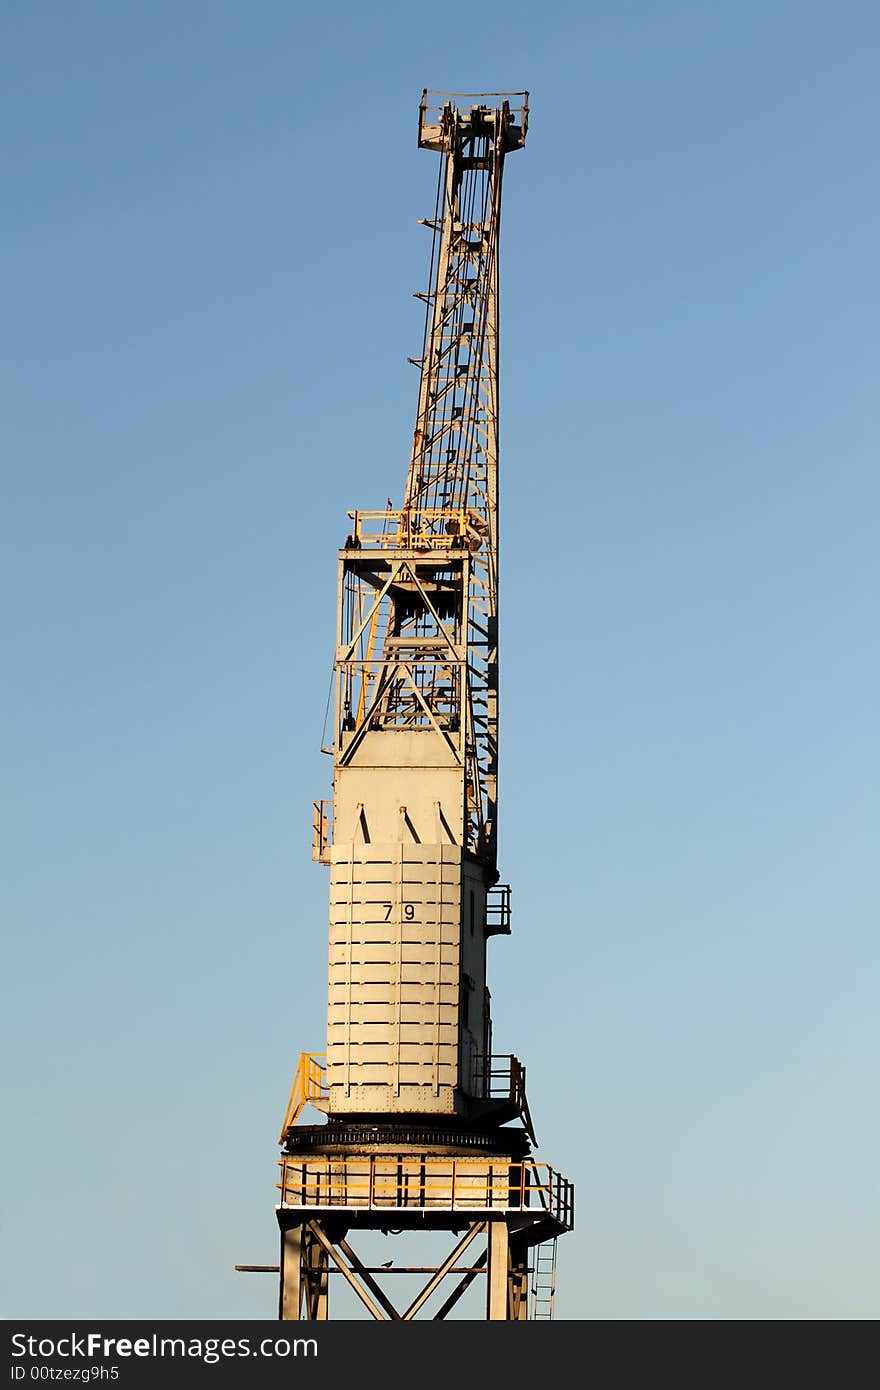 A dockside crane against a blue sky